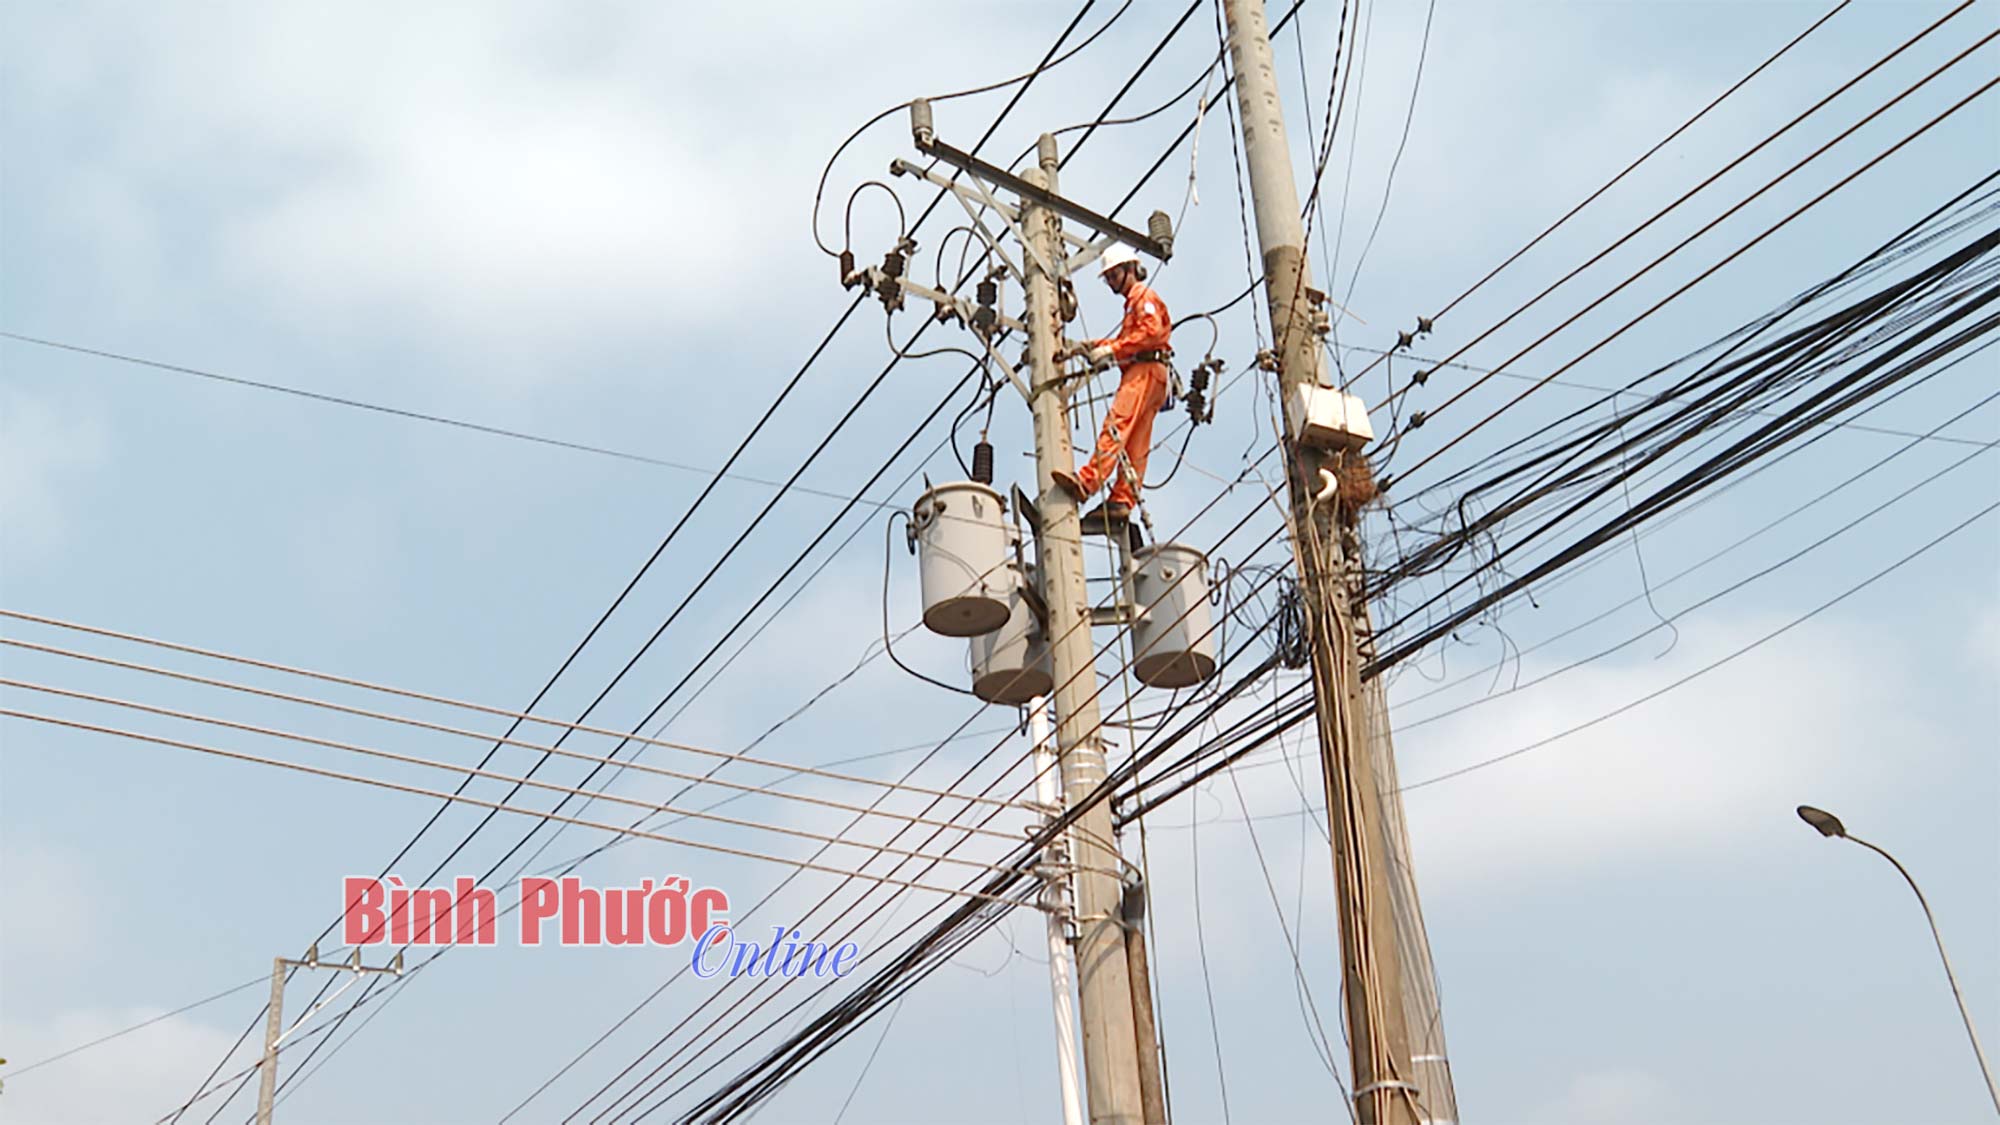 Điện lực Phước Long: Đảm bảo điện phục vụ sản xuất - kinh doanh